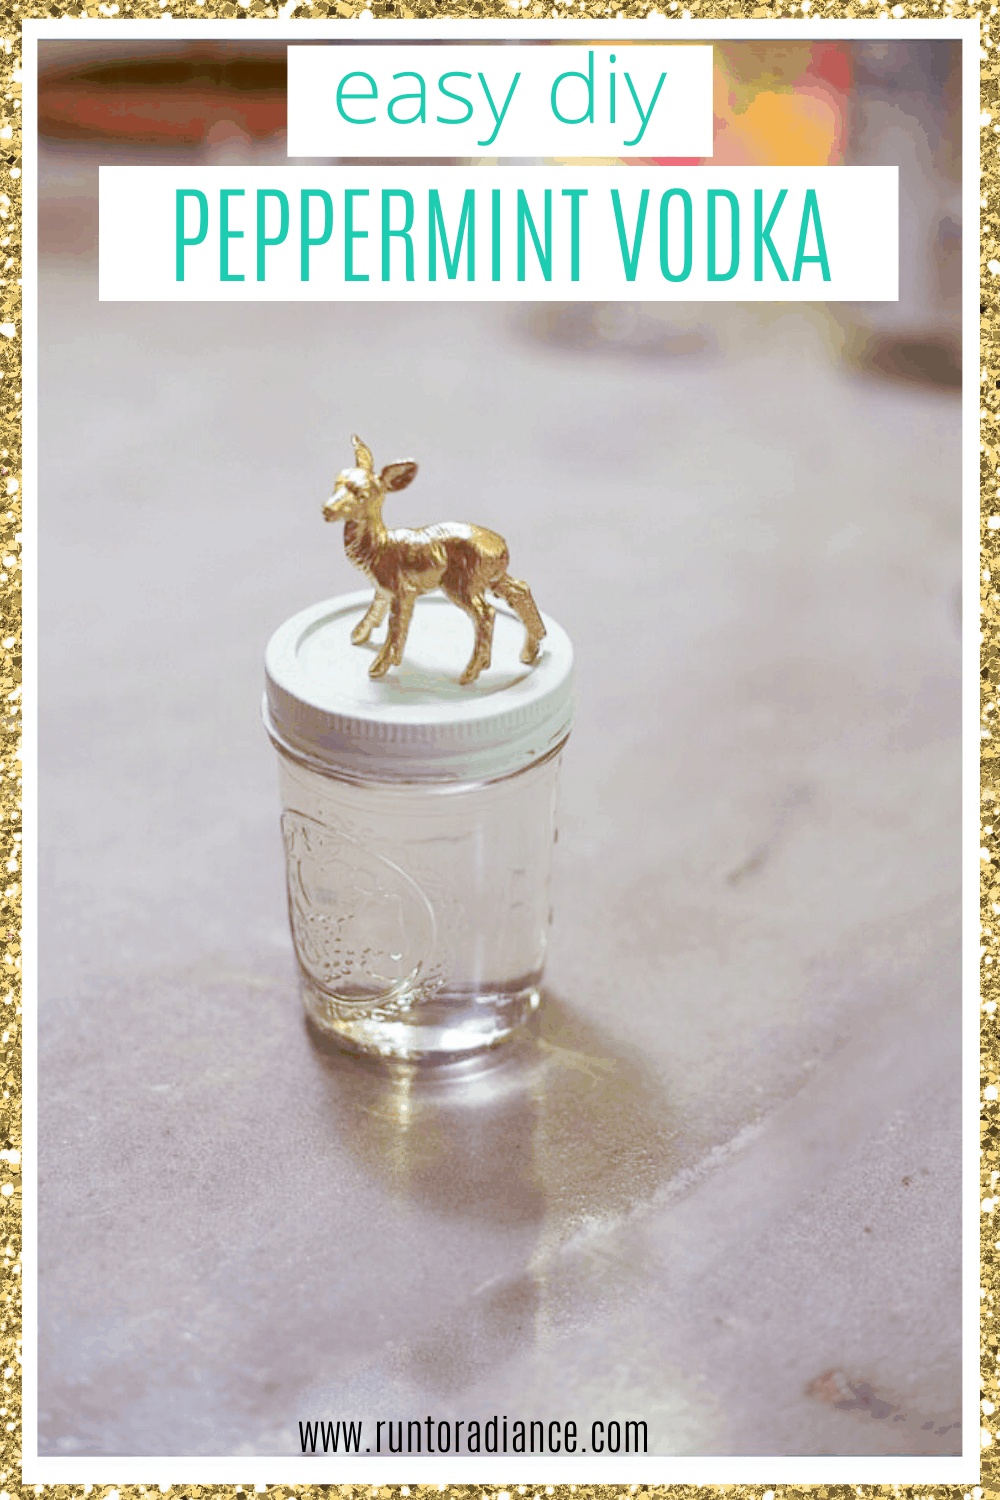 Pinterest image for easy DIY peppermint vodka.